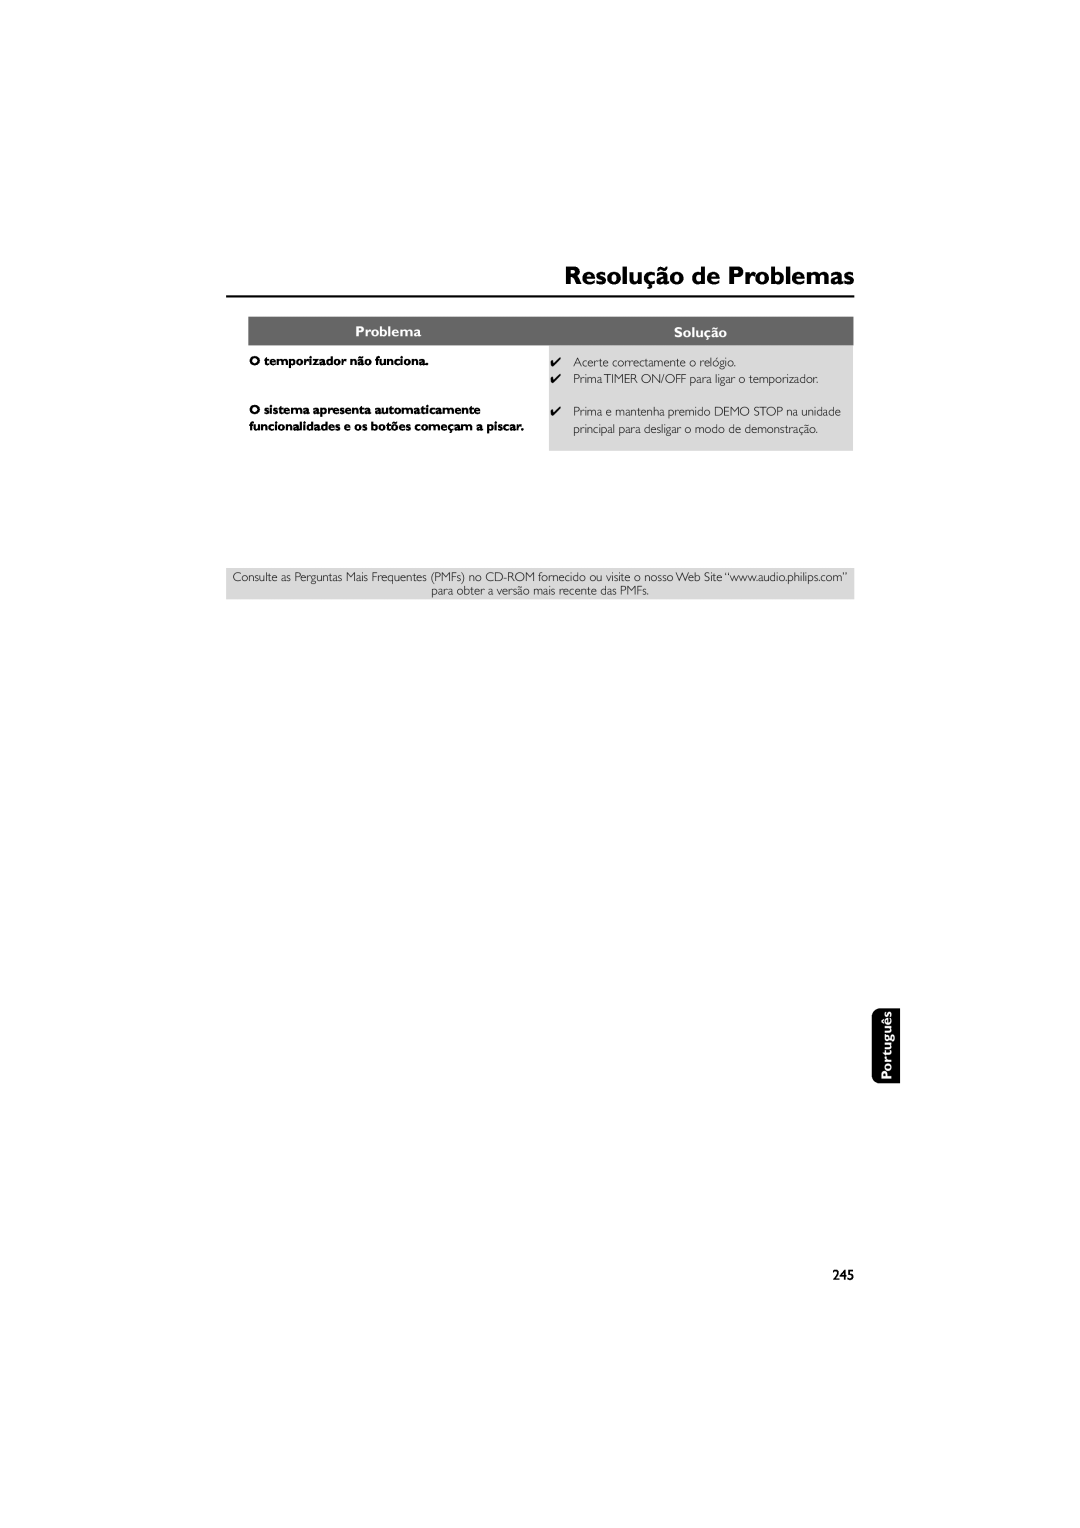 Philips FWM589 manual Resolução de Problemas, Solução, Português, O temporizador não funciona 